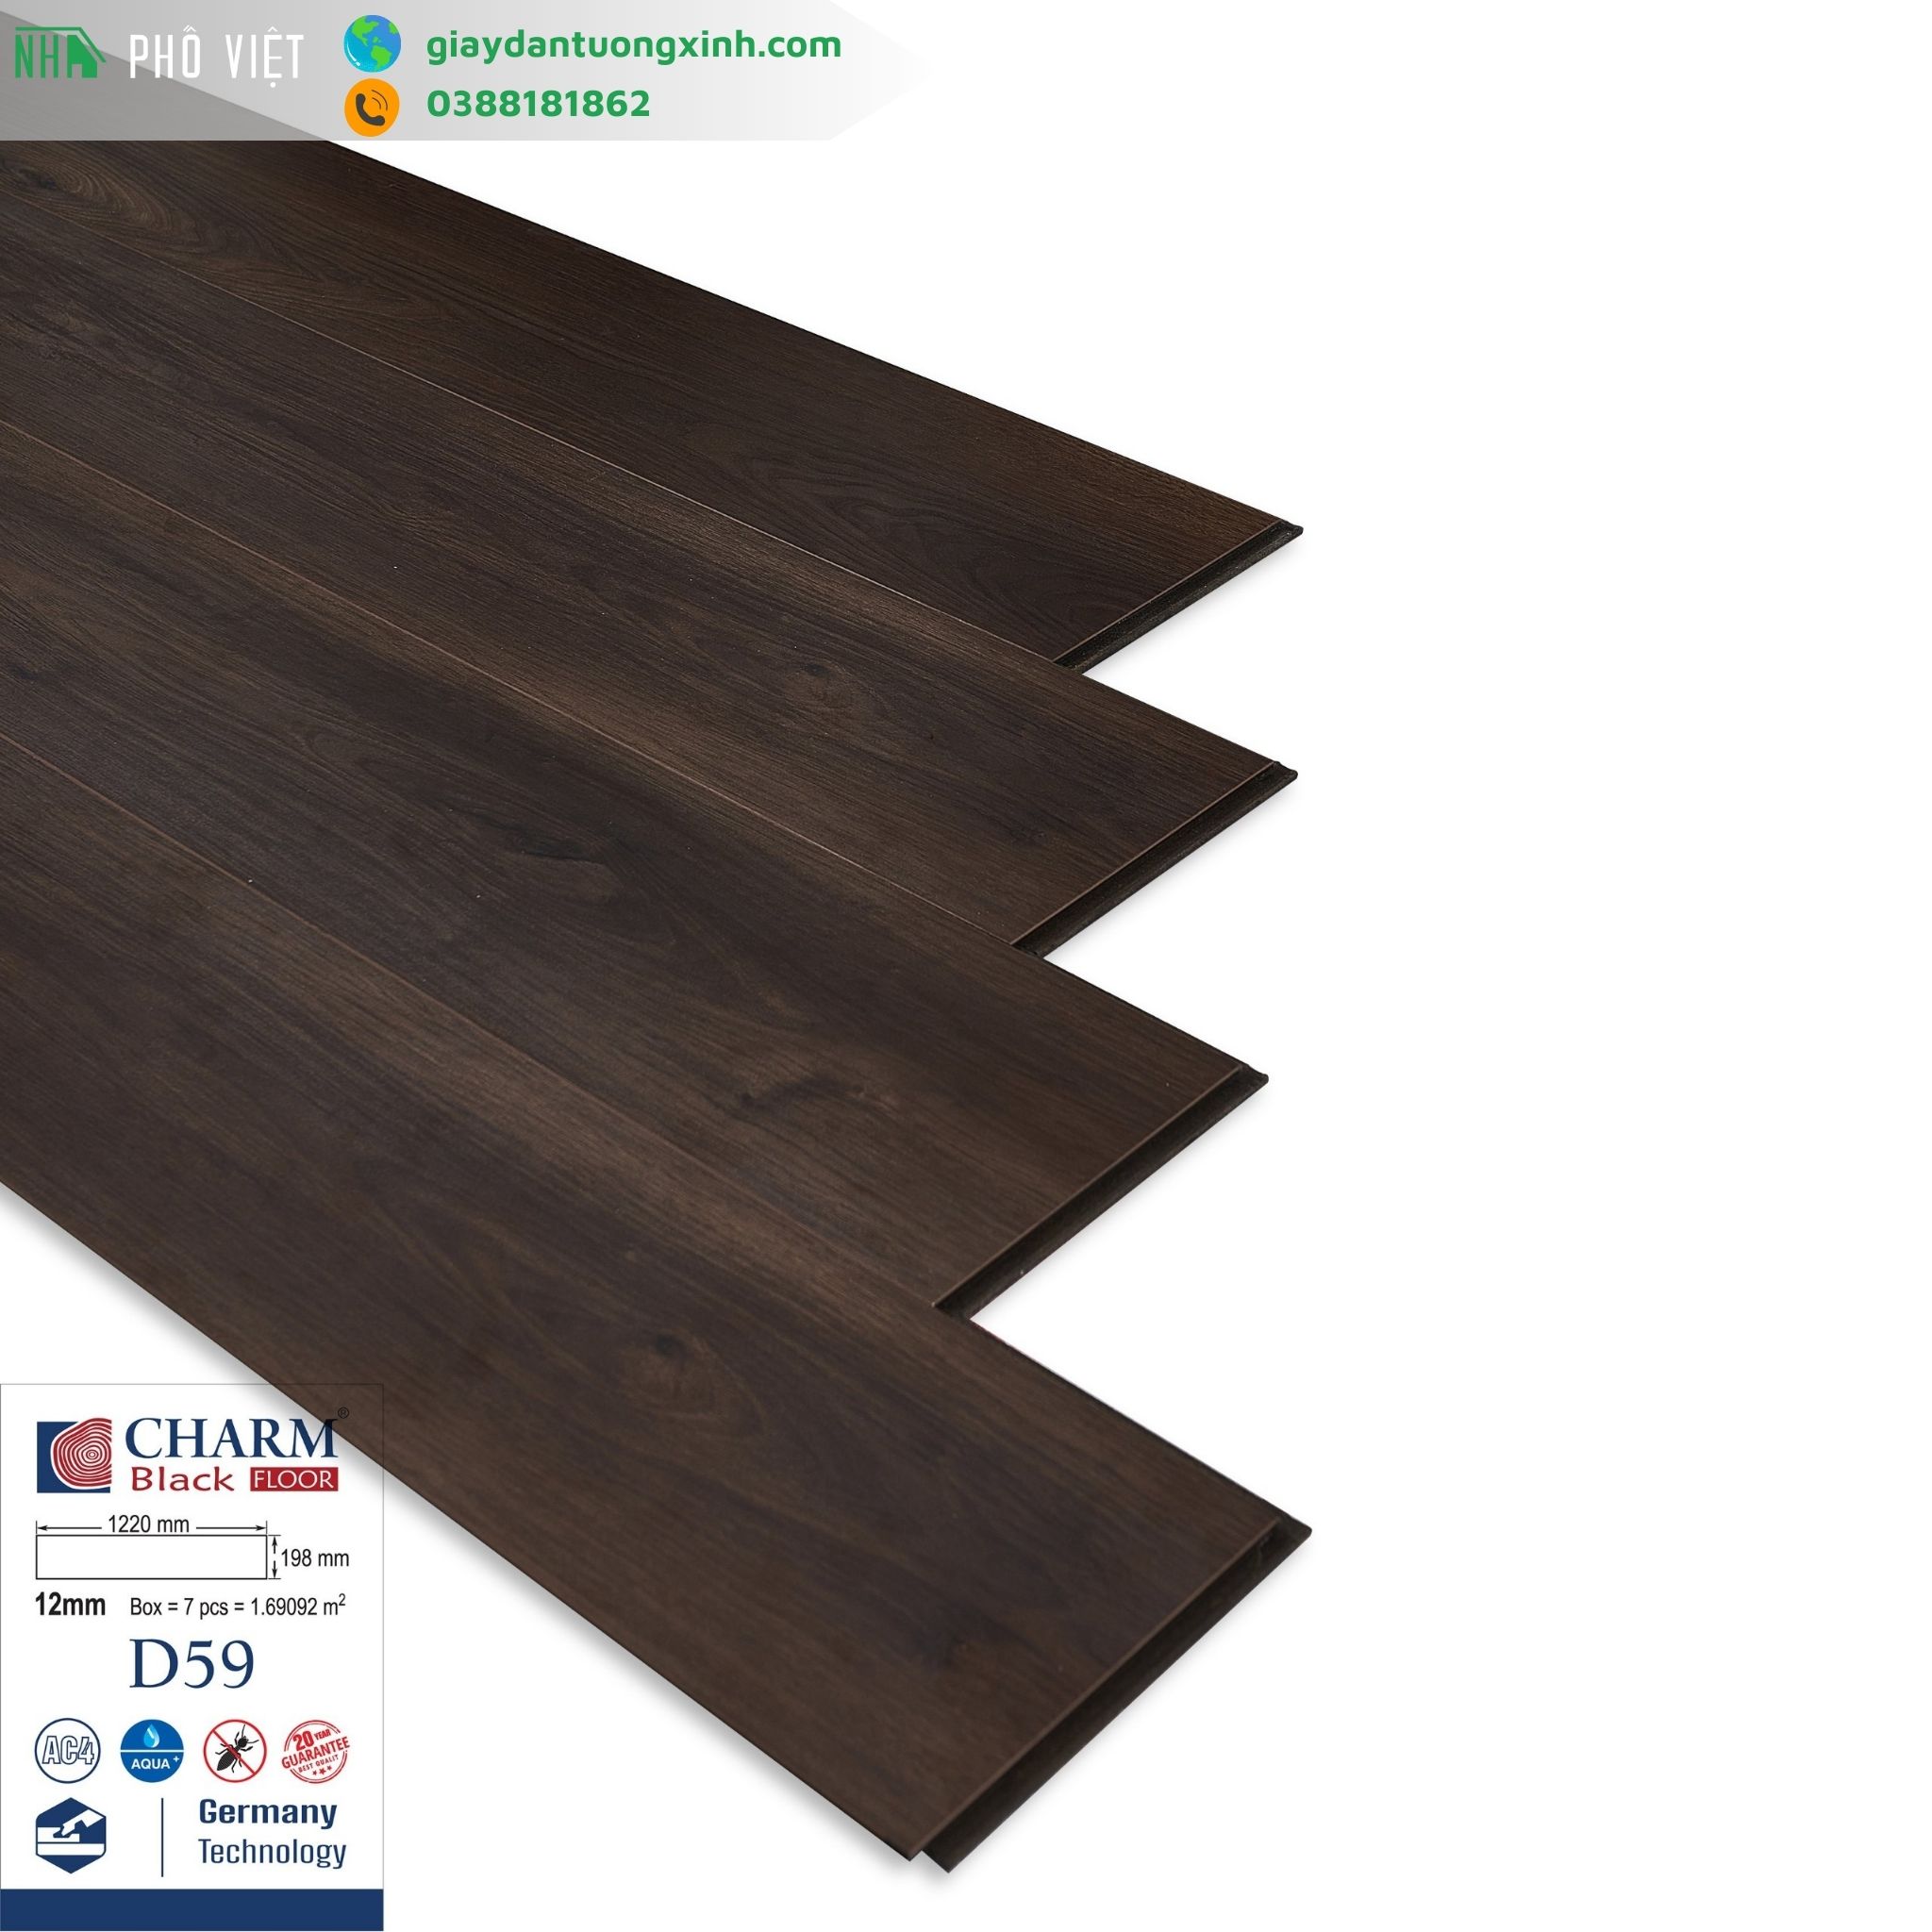 Sàn gỗ Charmwood cốt đen 12mm- D59